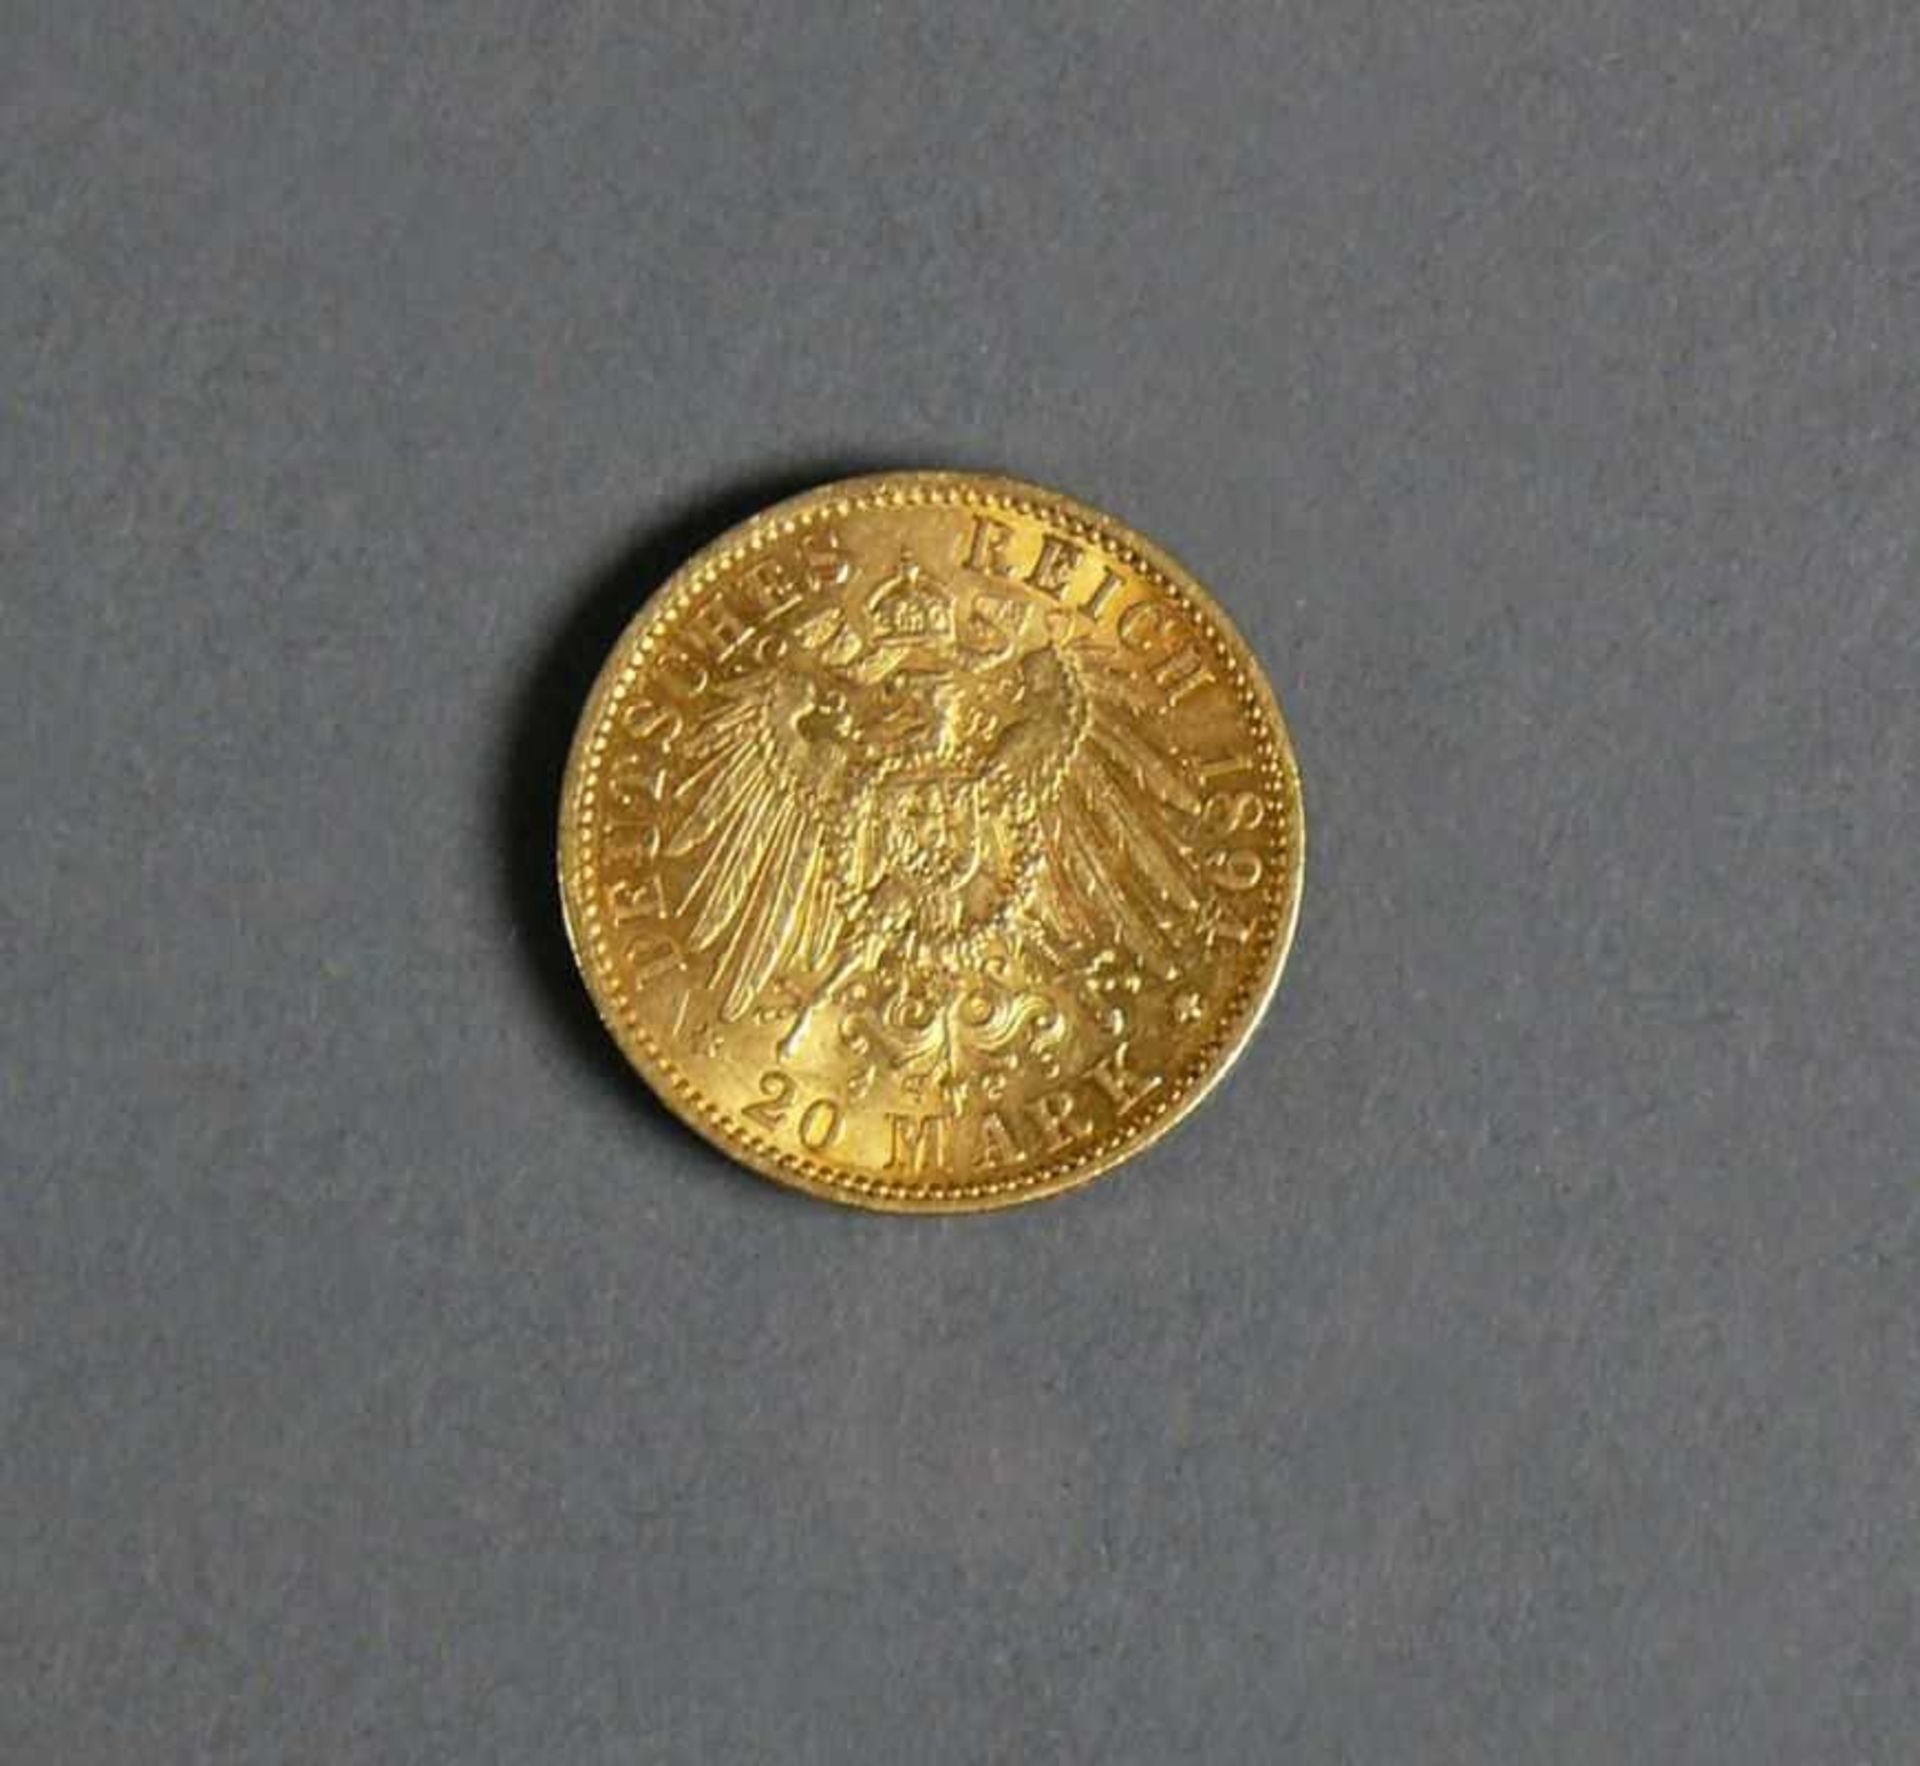 Goldmünze 20 Mark, Wilhelm II, Deutscher Kaiser, König von Preussen 1894 A - Bild 2 aus 2